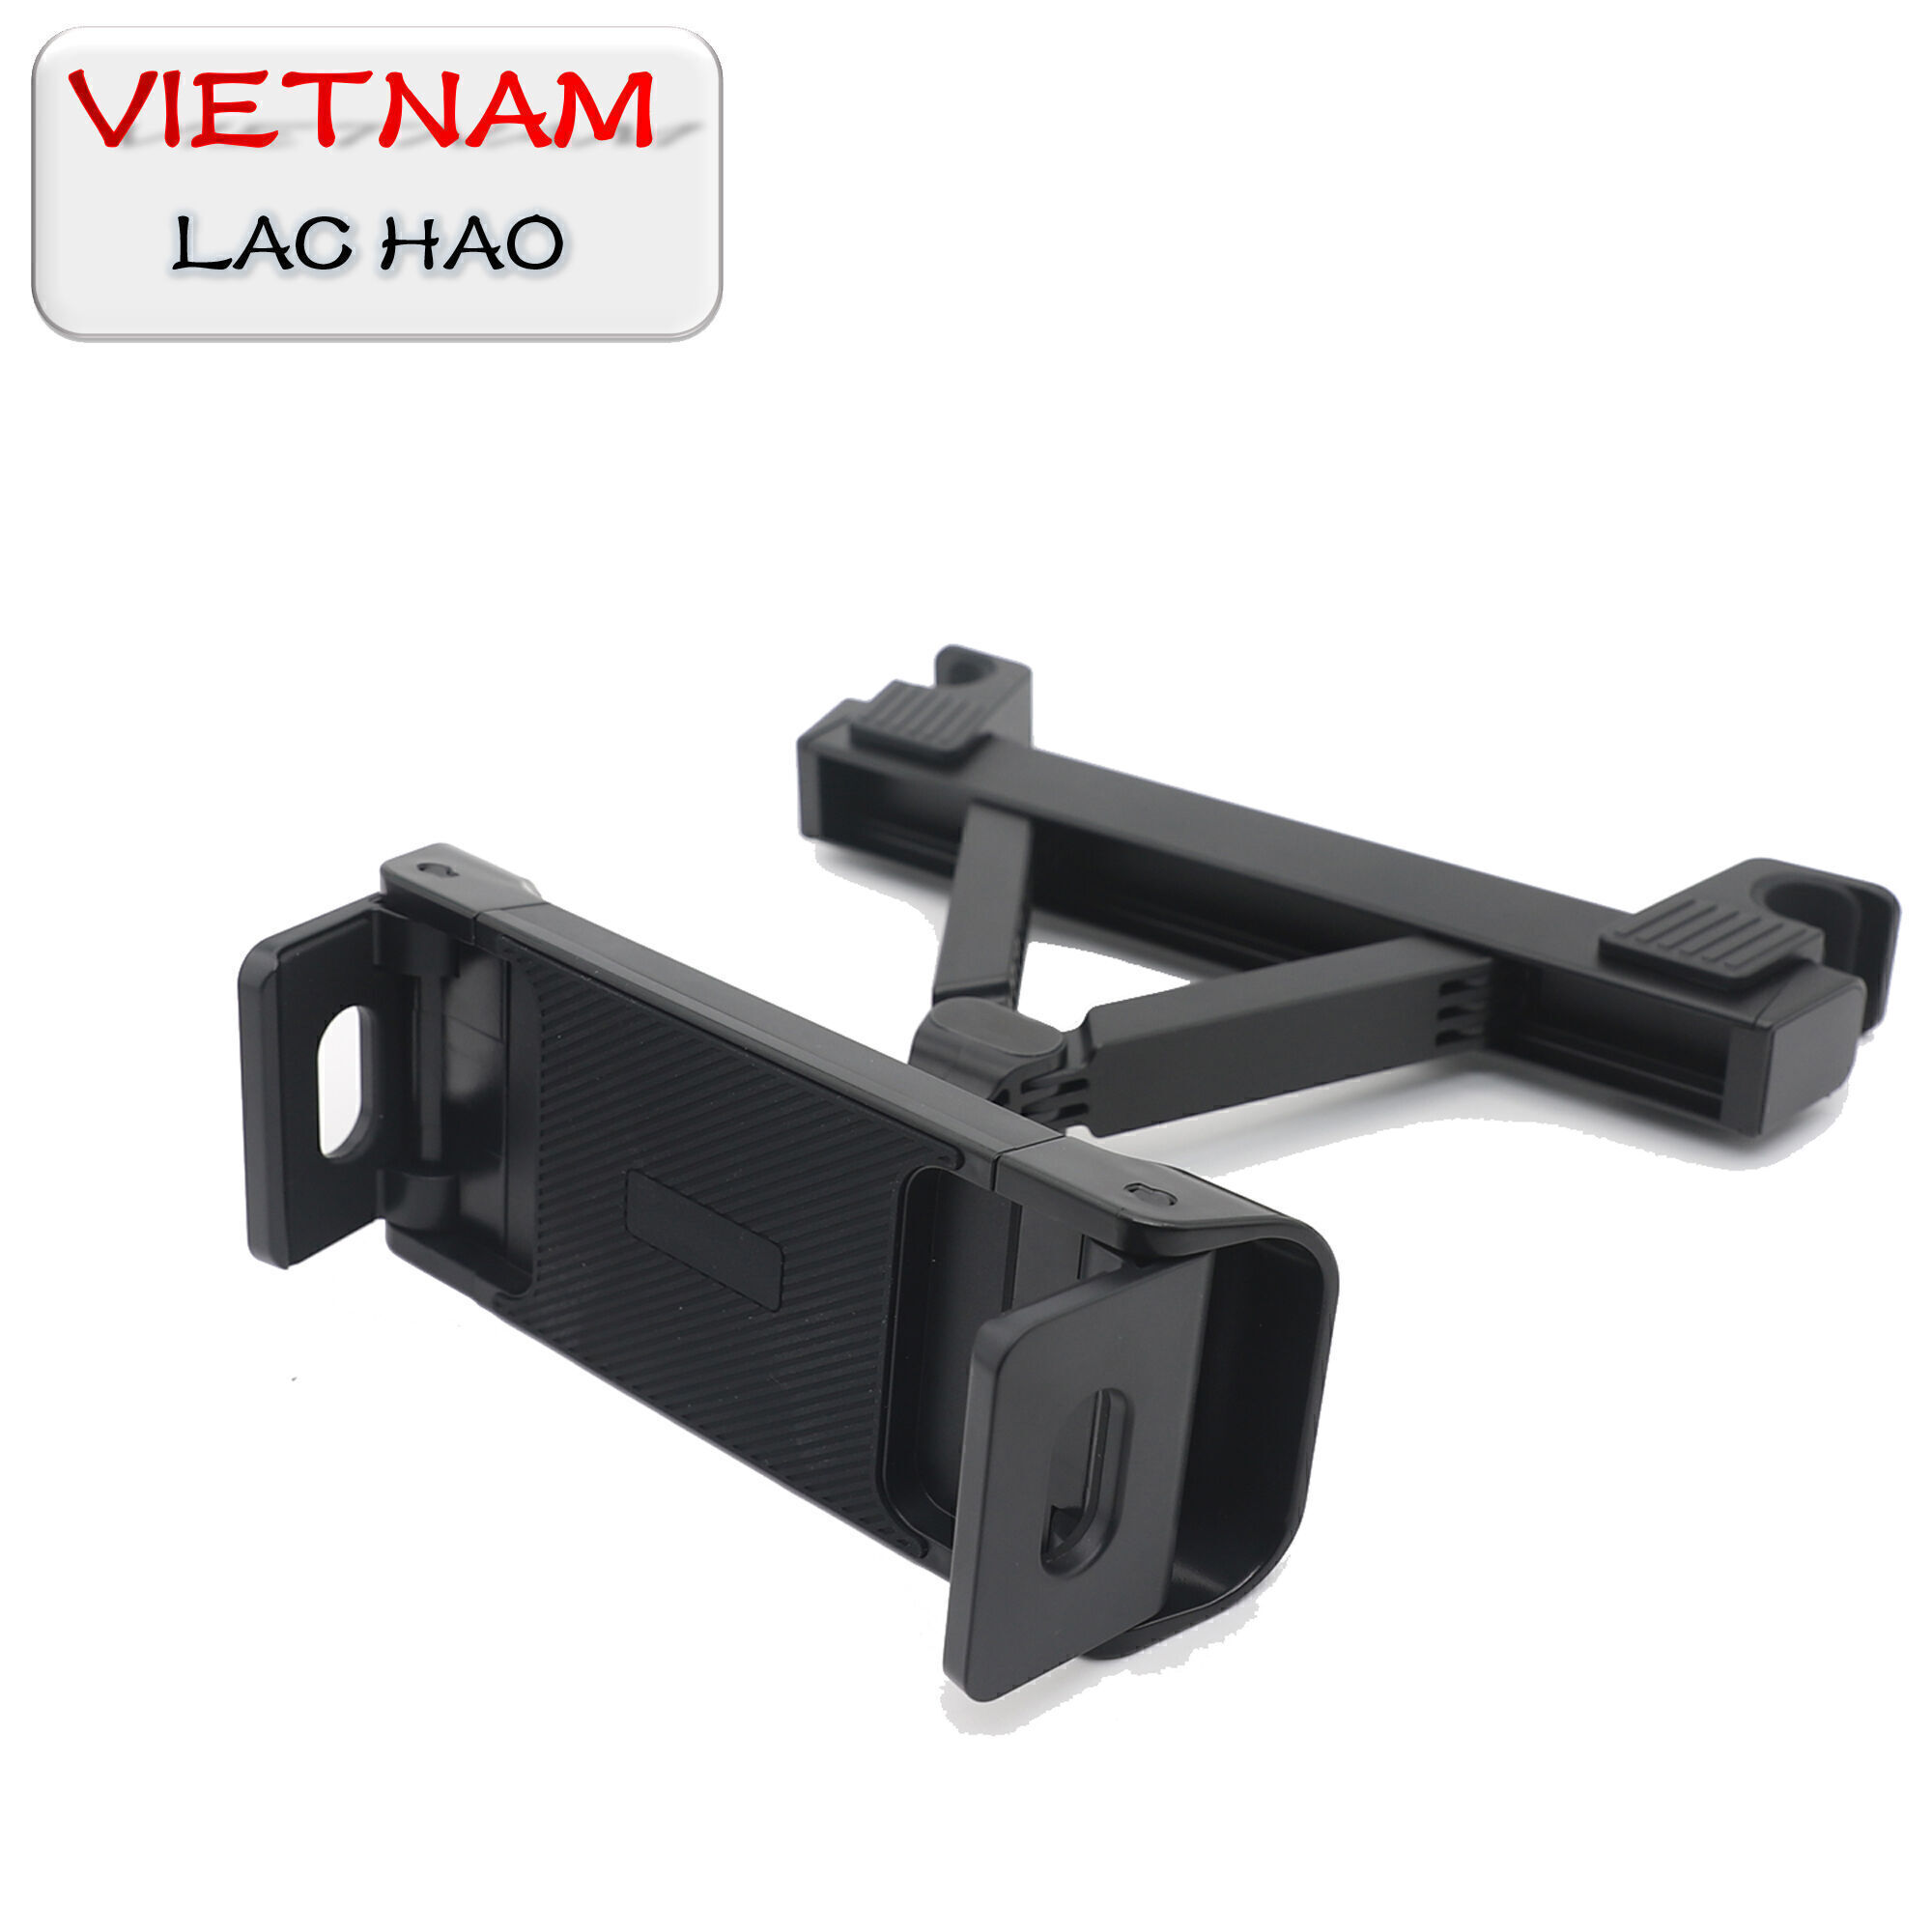 Kaufen Sie Vietnam Großhandels-Rücksitz Tablet-halter Magnetische Auto-kopfstütze,  Clamp Cell Telefon Halter, Mobile Telefon Halter In Viet Nam und Tablet- halter Für Auto-rückenlehne Großhandelsanbietern zu einem Preis von 2.9 USD